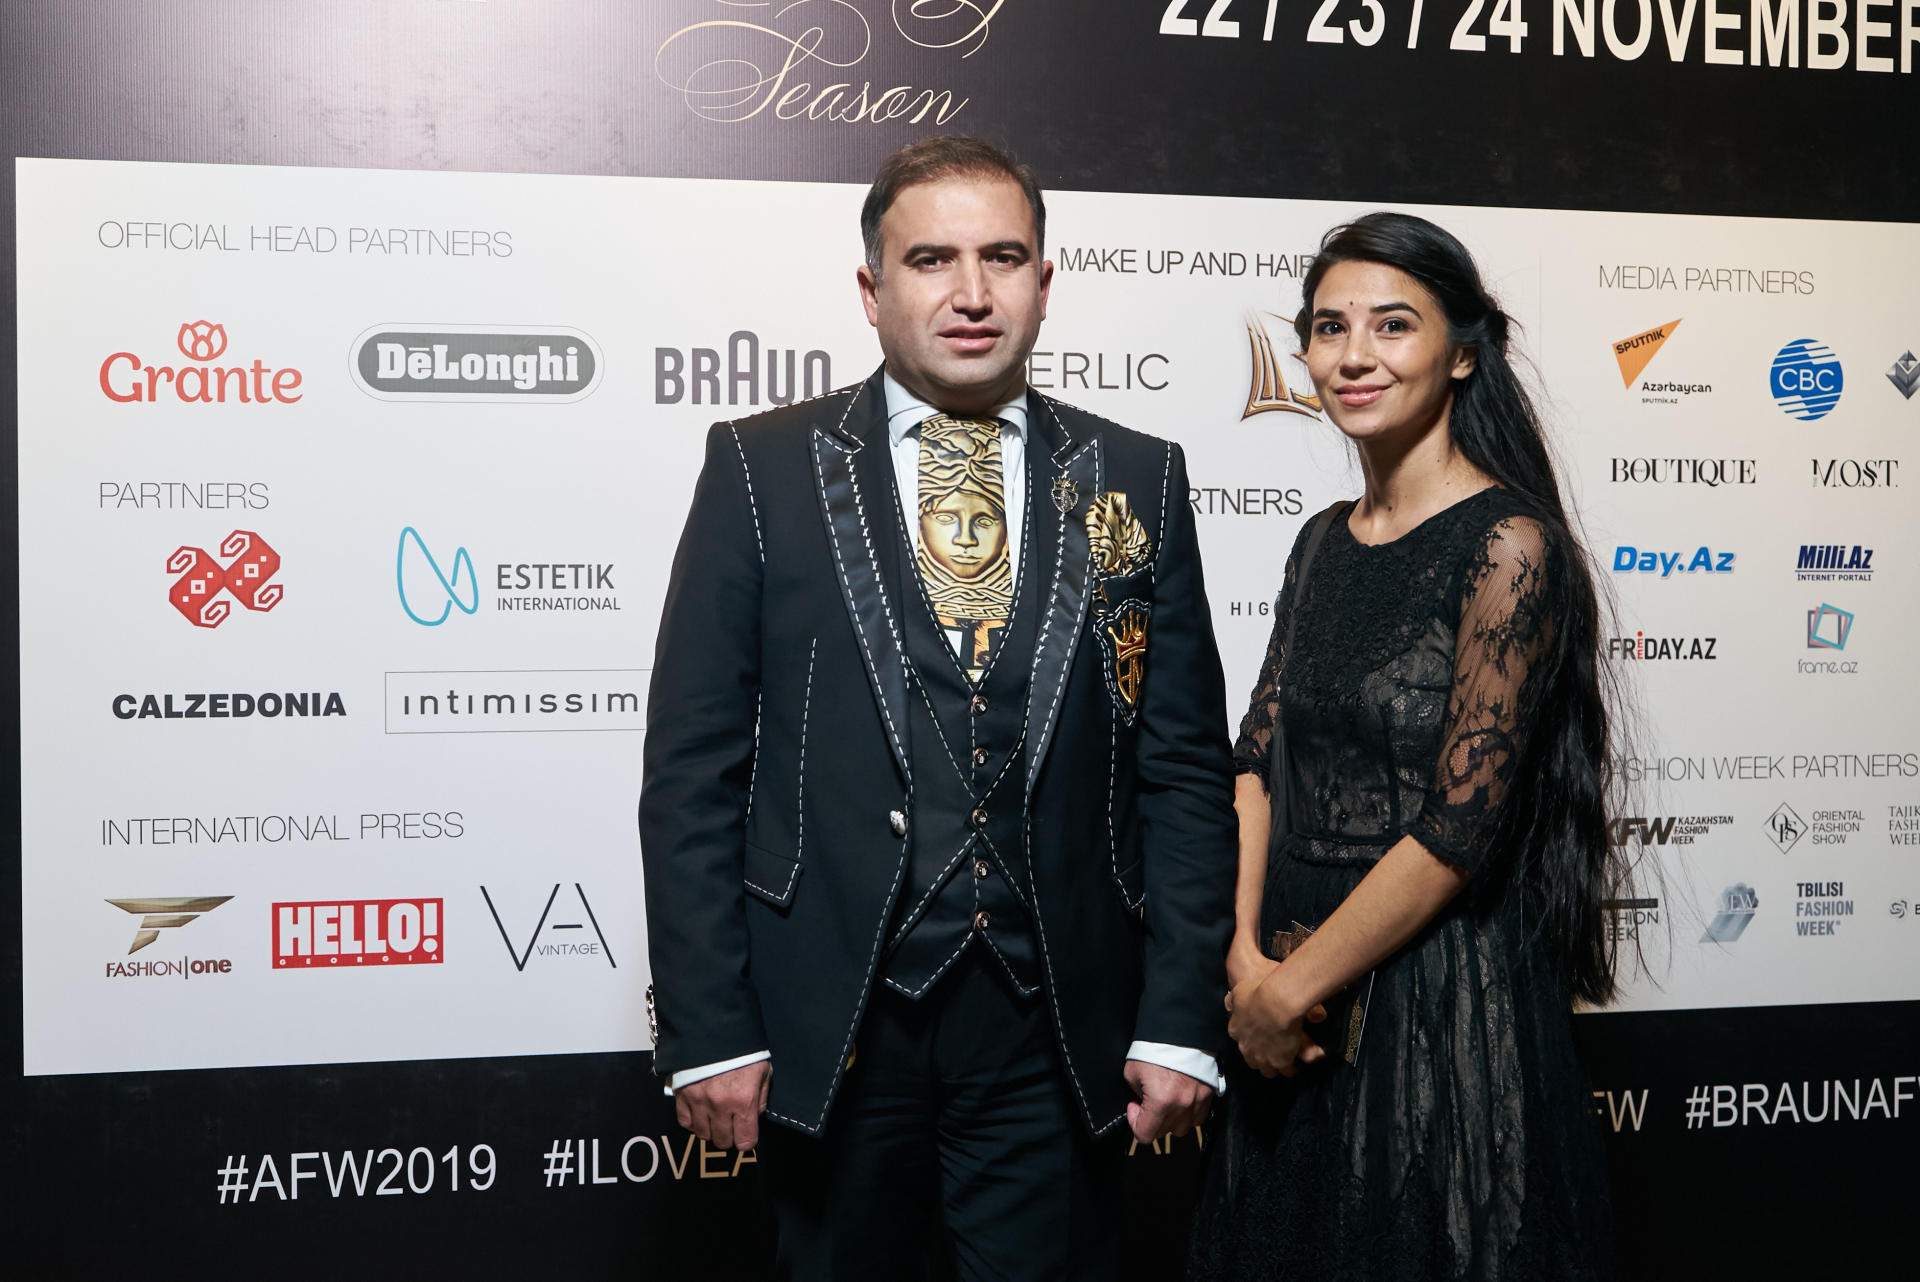 Юбилейный Azerbaijan Fashion Week